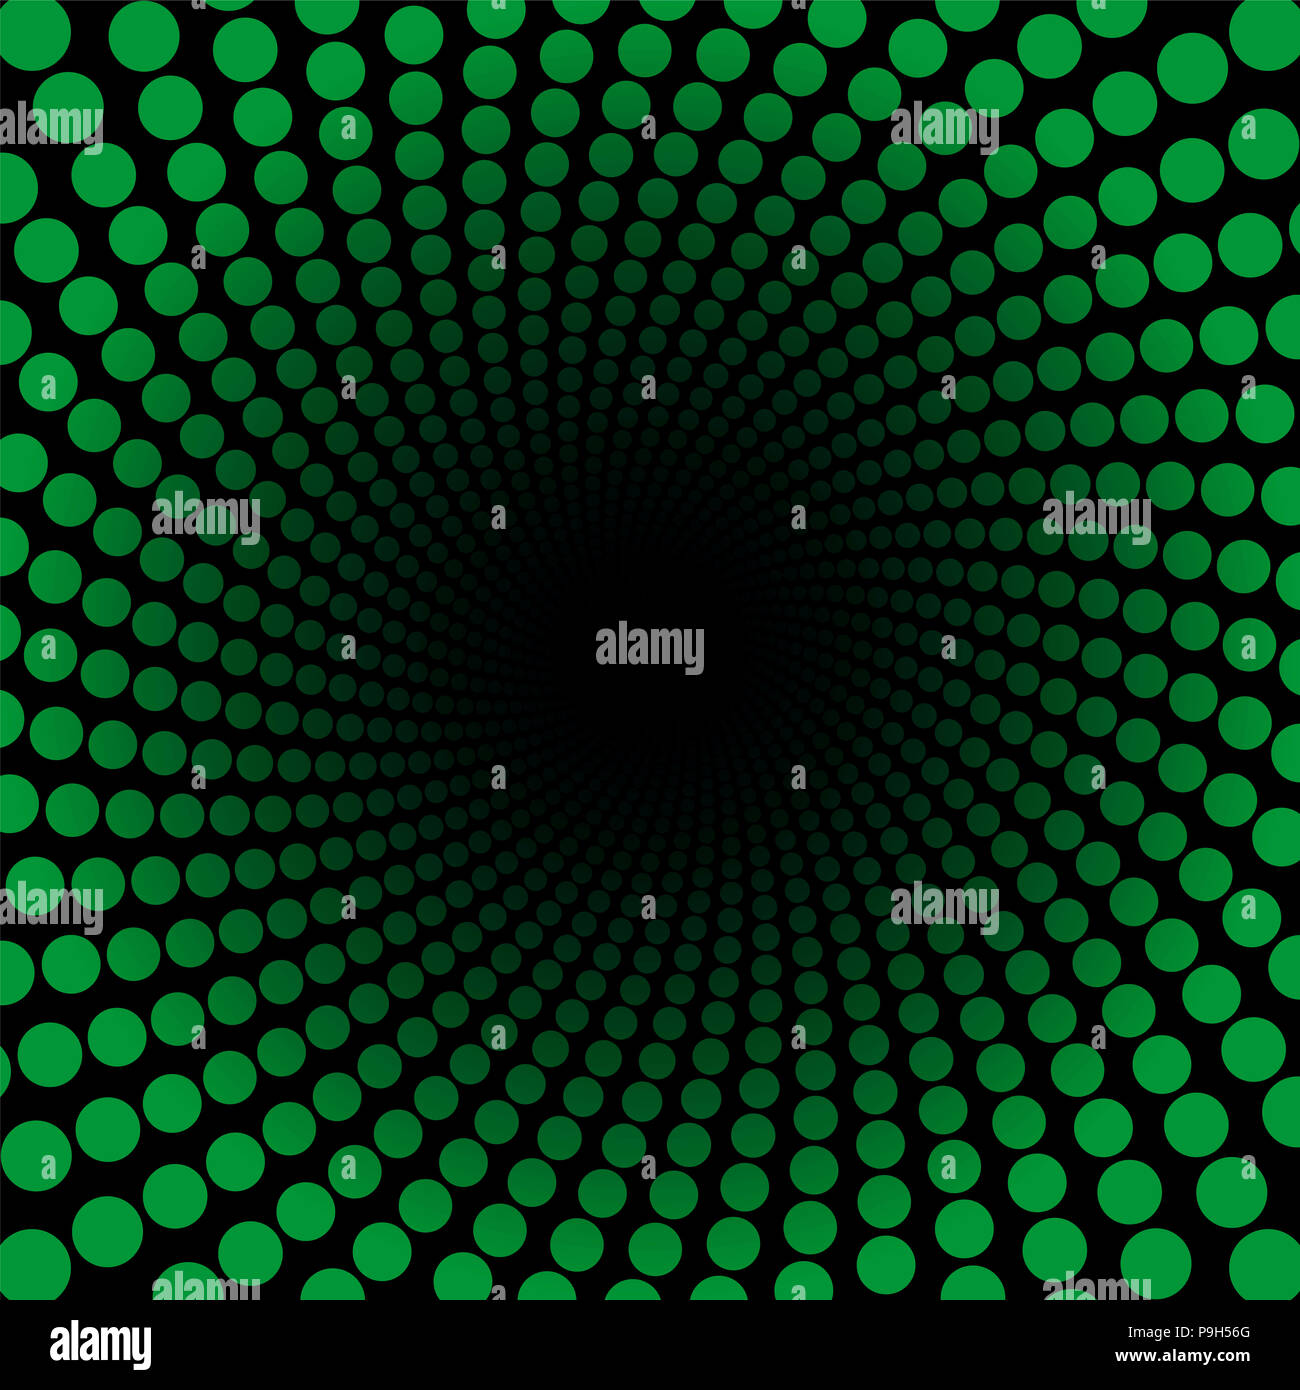 Patrón de espiral con puntos verdes, el túnel con centro negro - Ilustración de fondo fractal circulares trenzados. Foto de stock